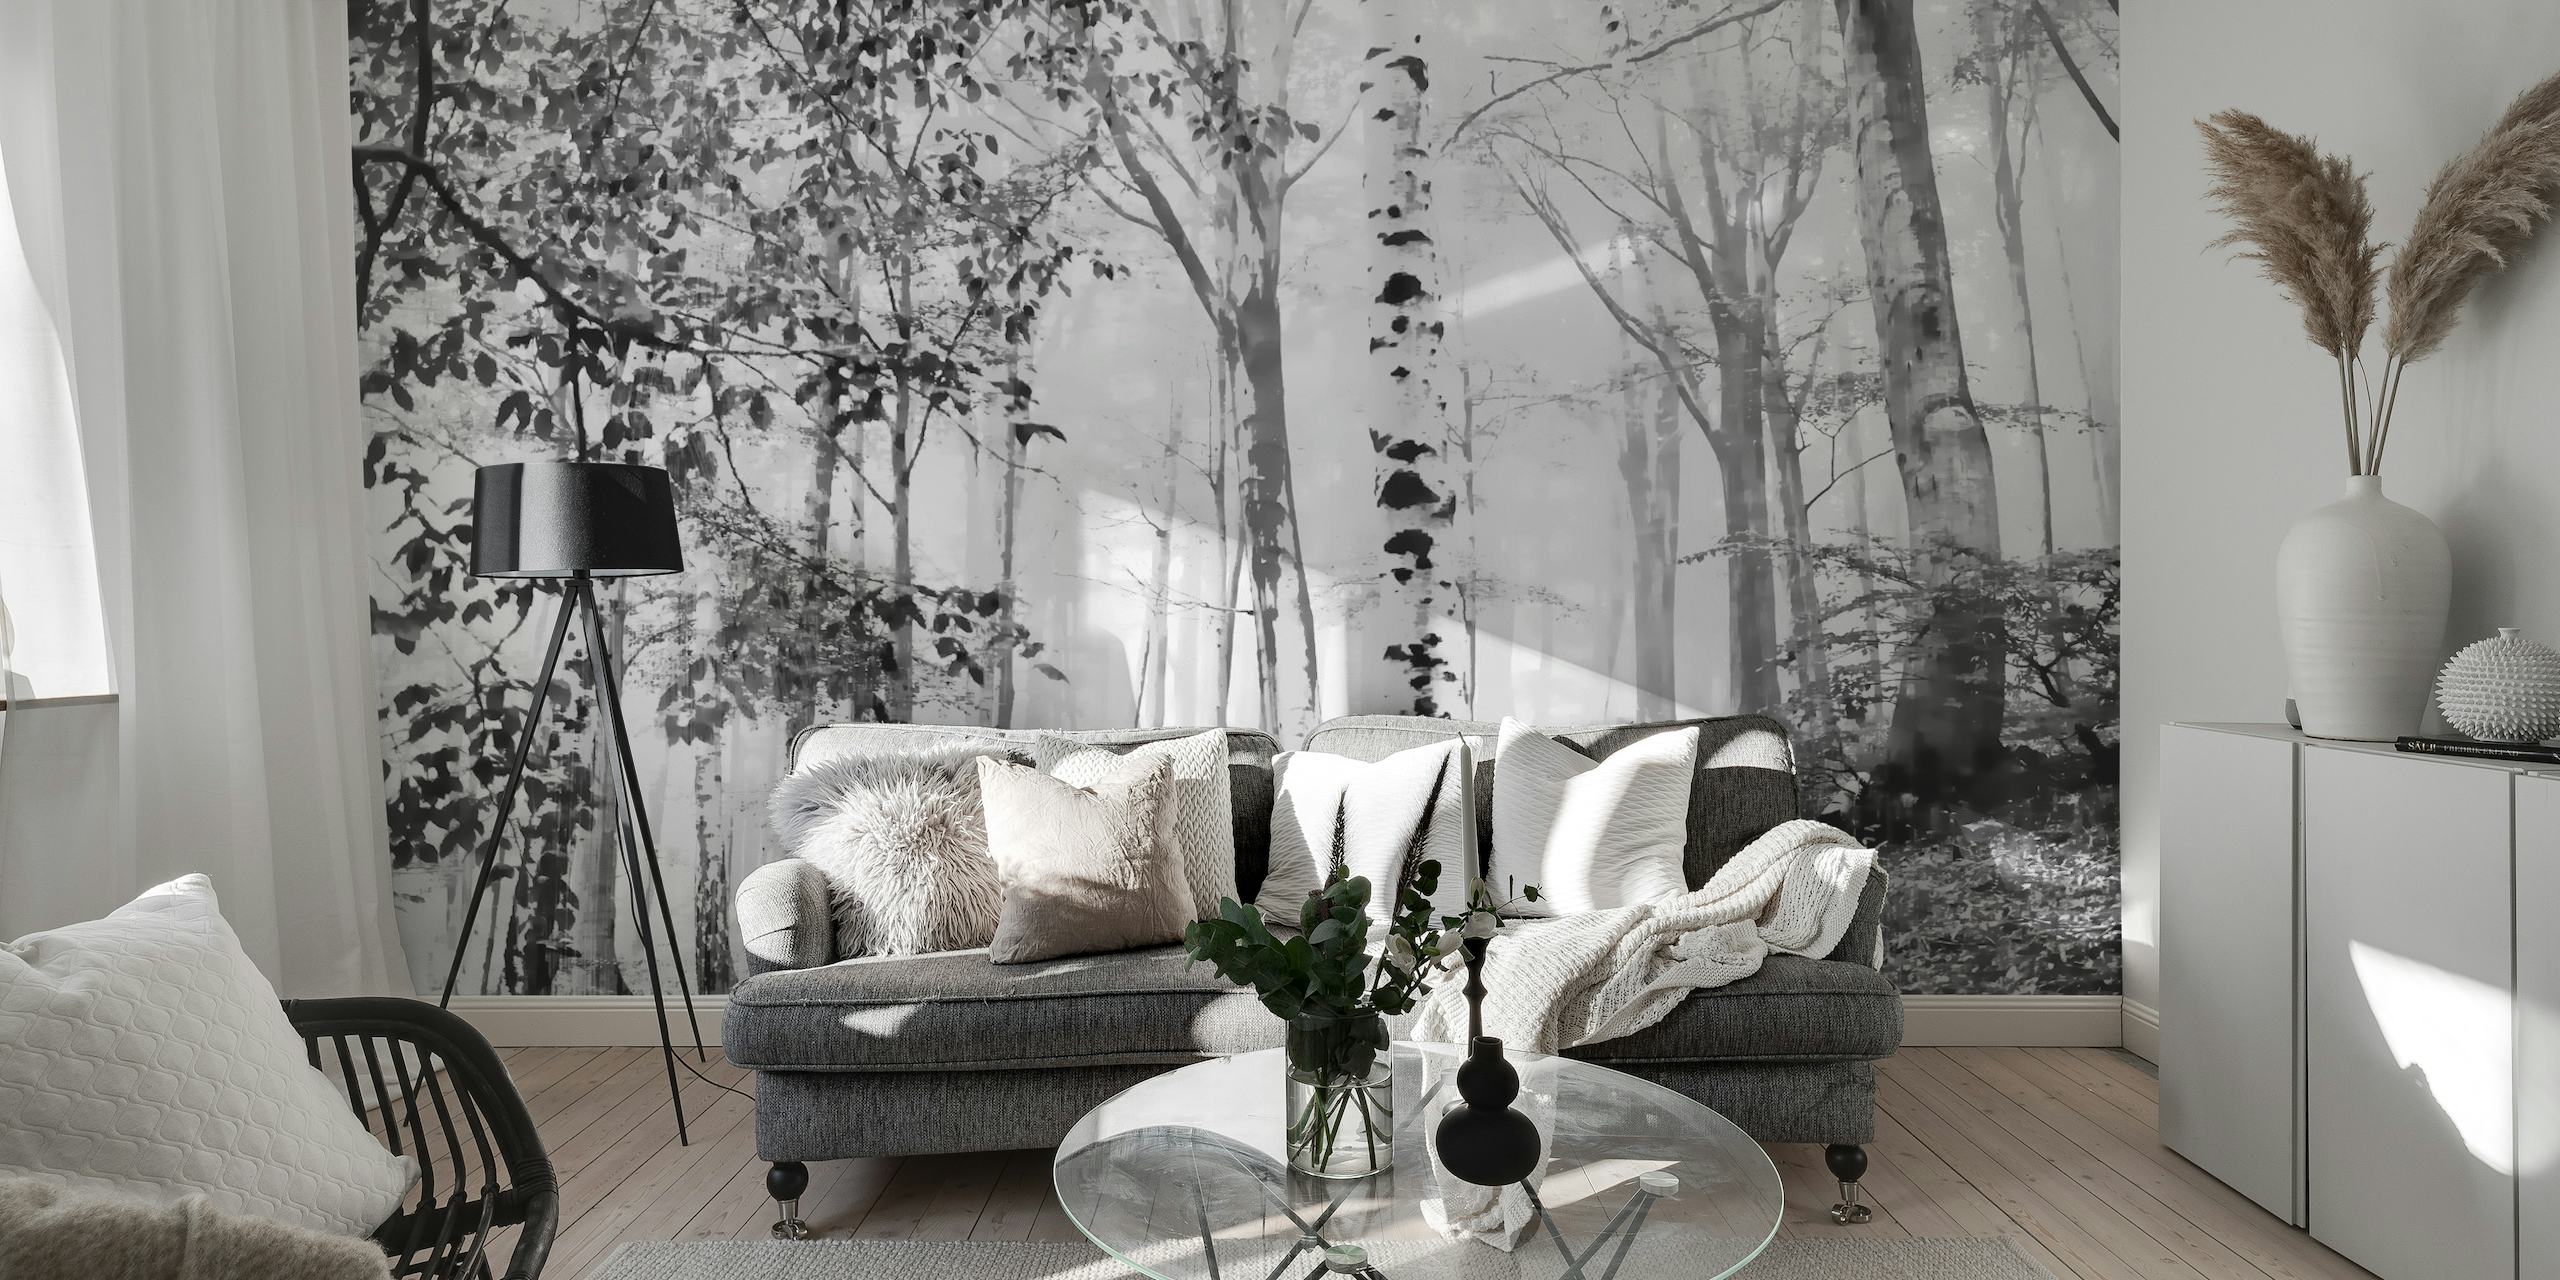 Fototapete „Nebliger Birkenwald“ in Schwarz und Weiß, die eine ruhige Waldszene für die Inneneinrichtung schafft